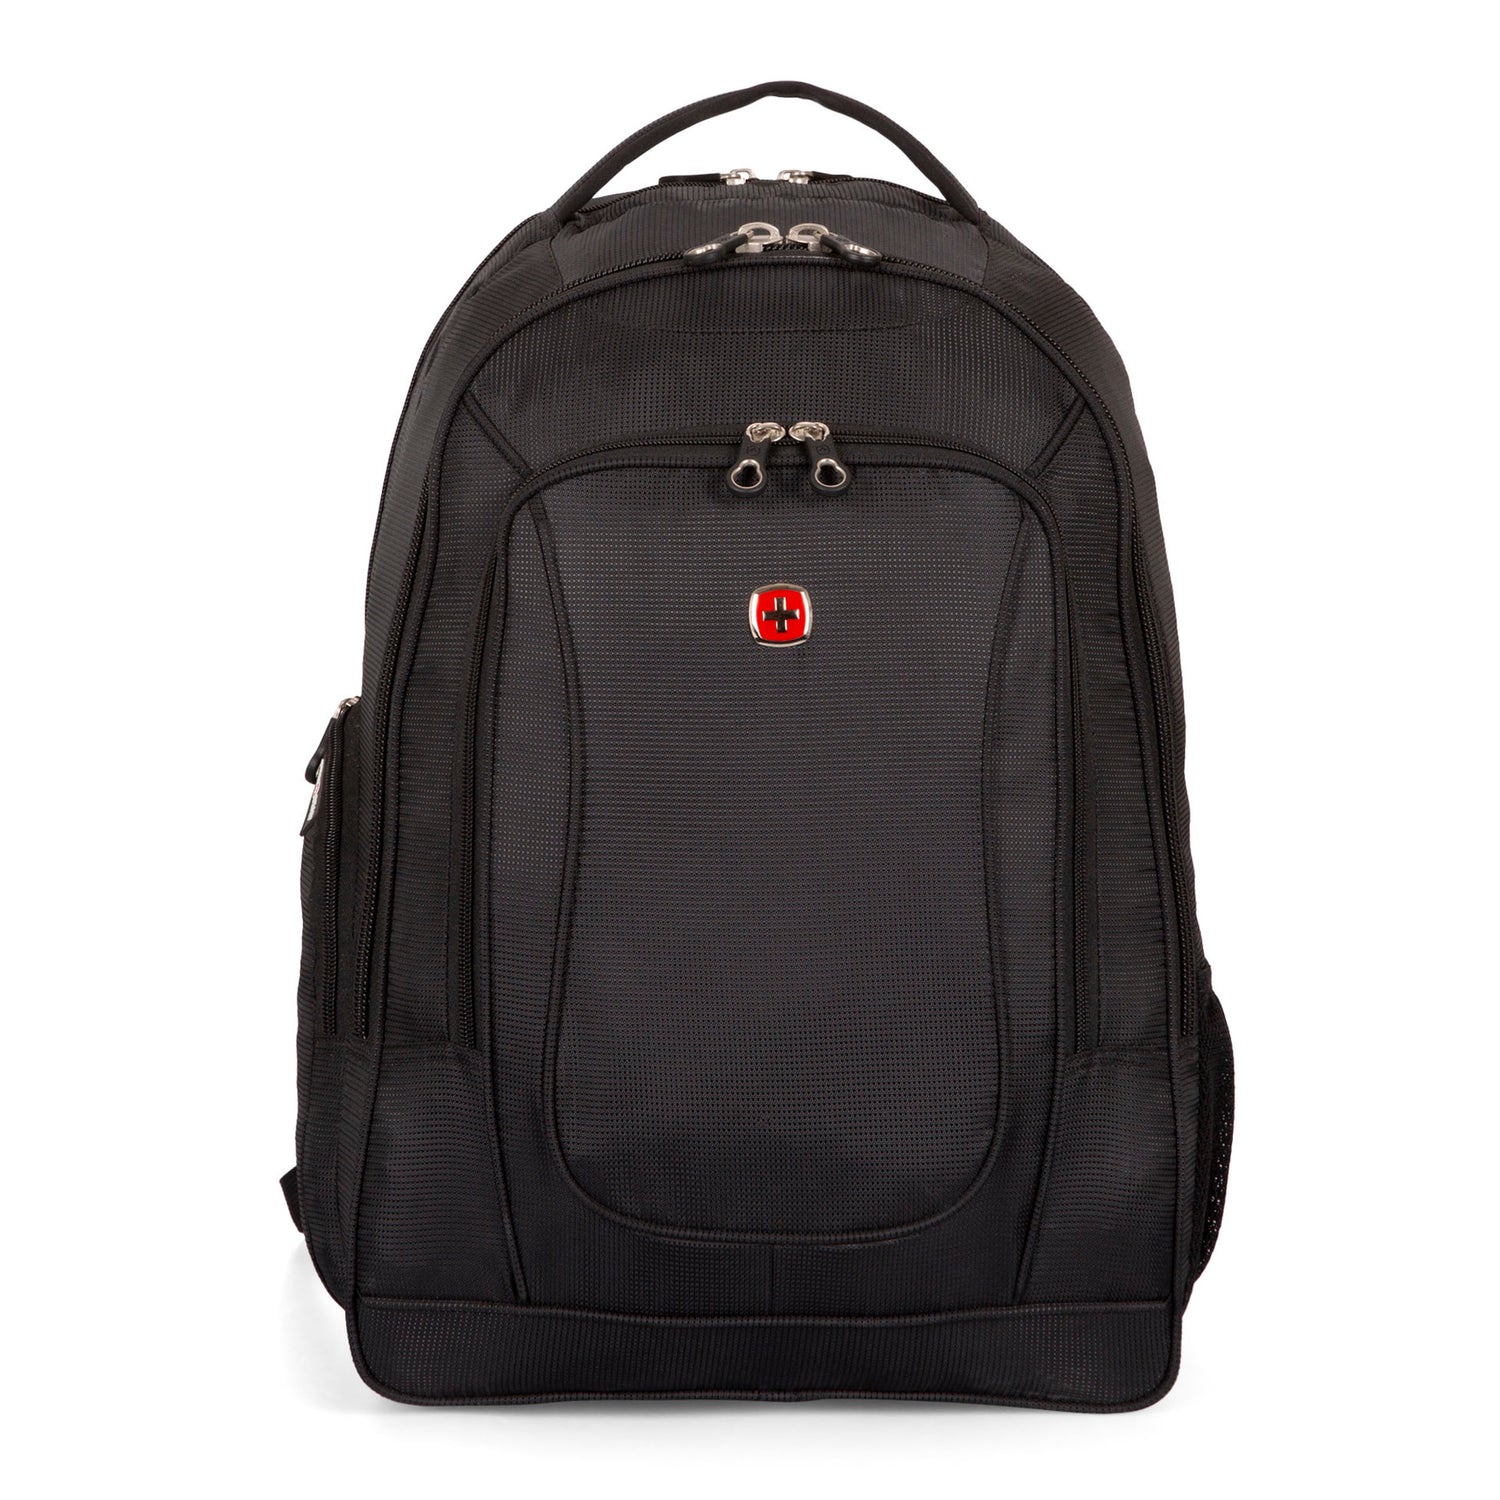 Core 17.3" Laptop Backpack - Bentley